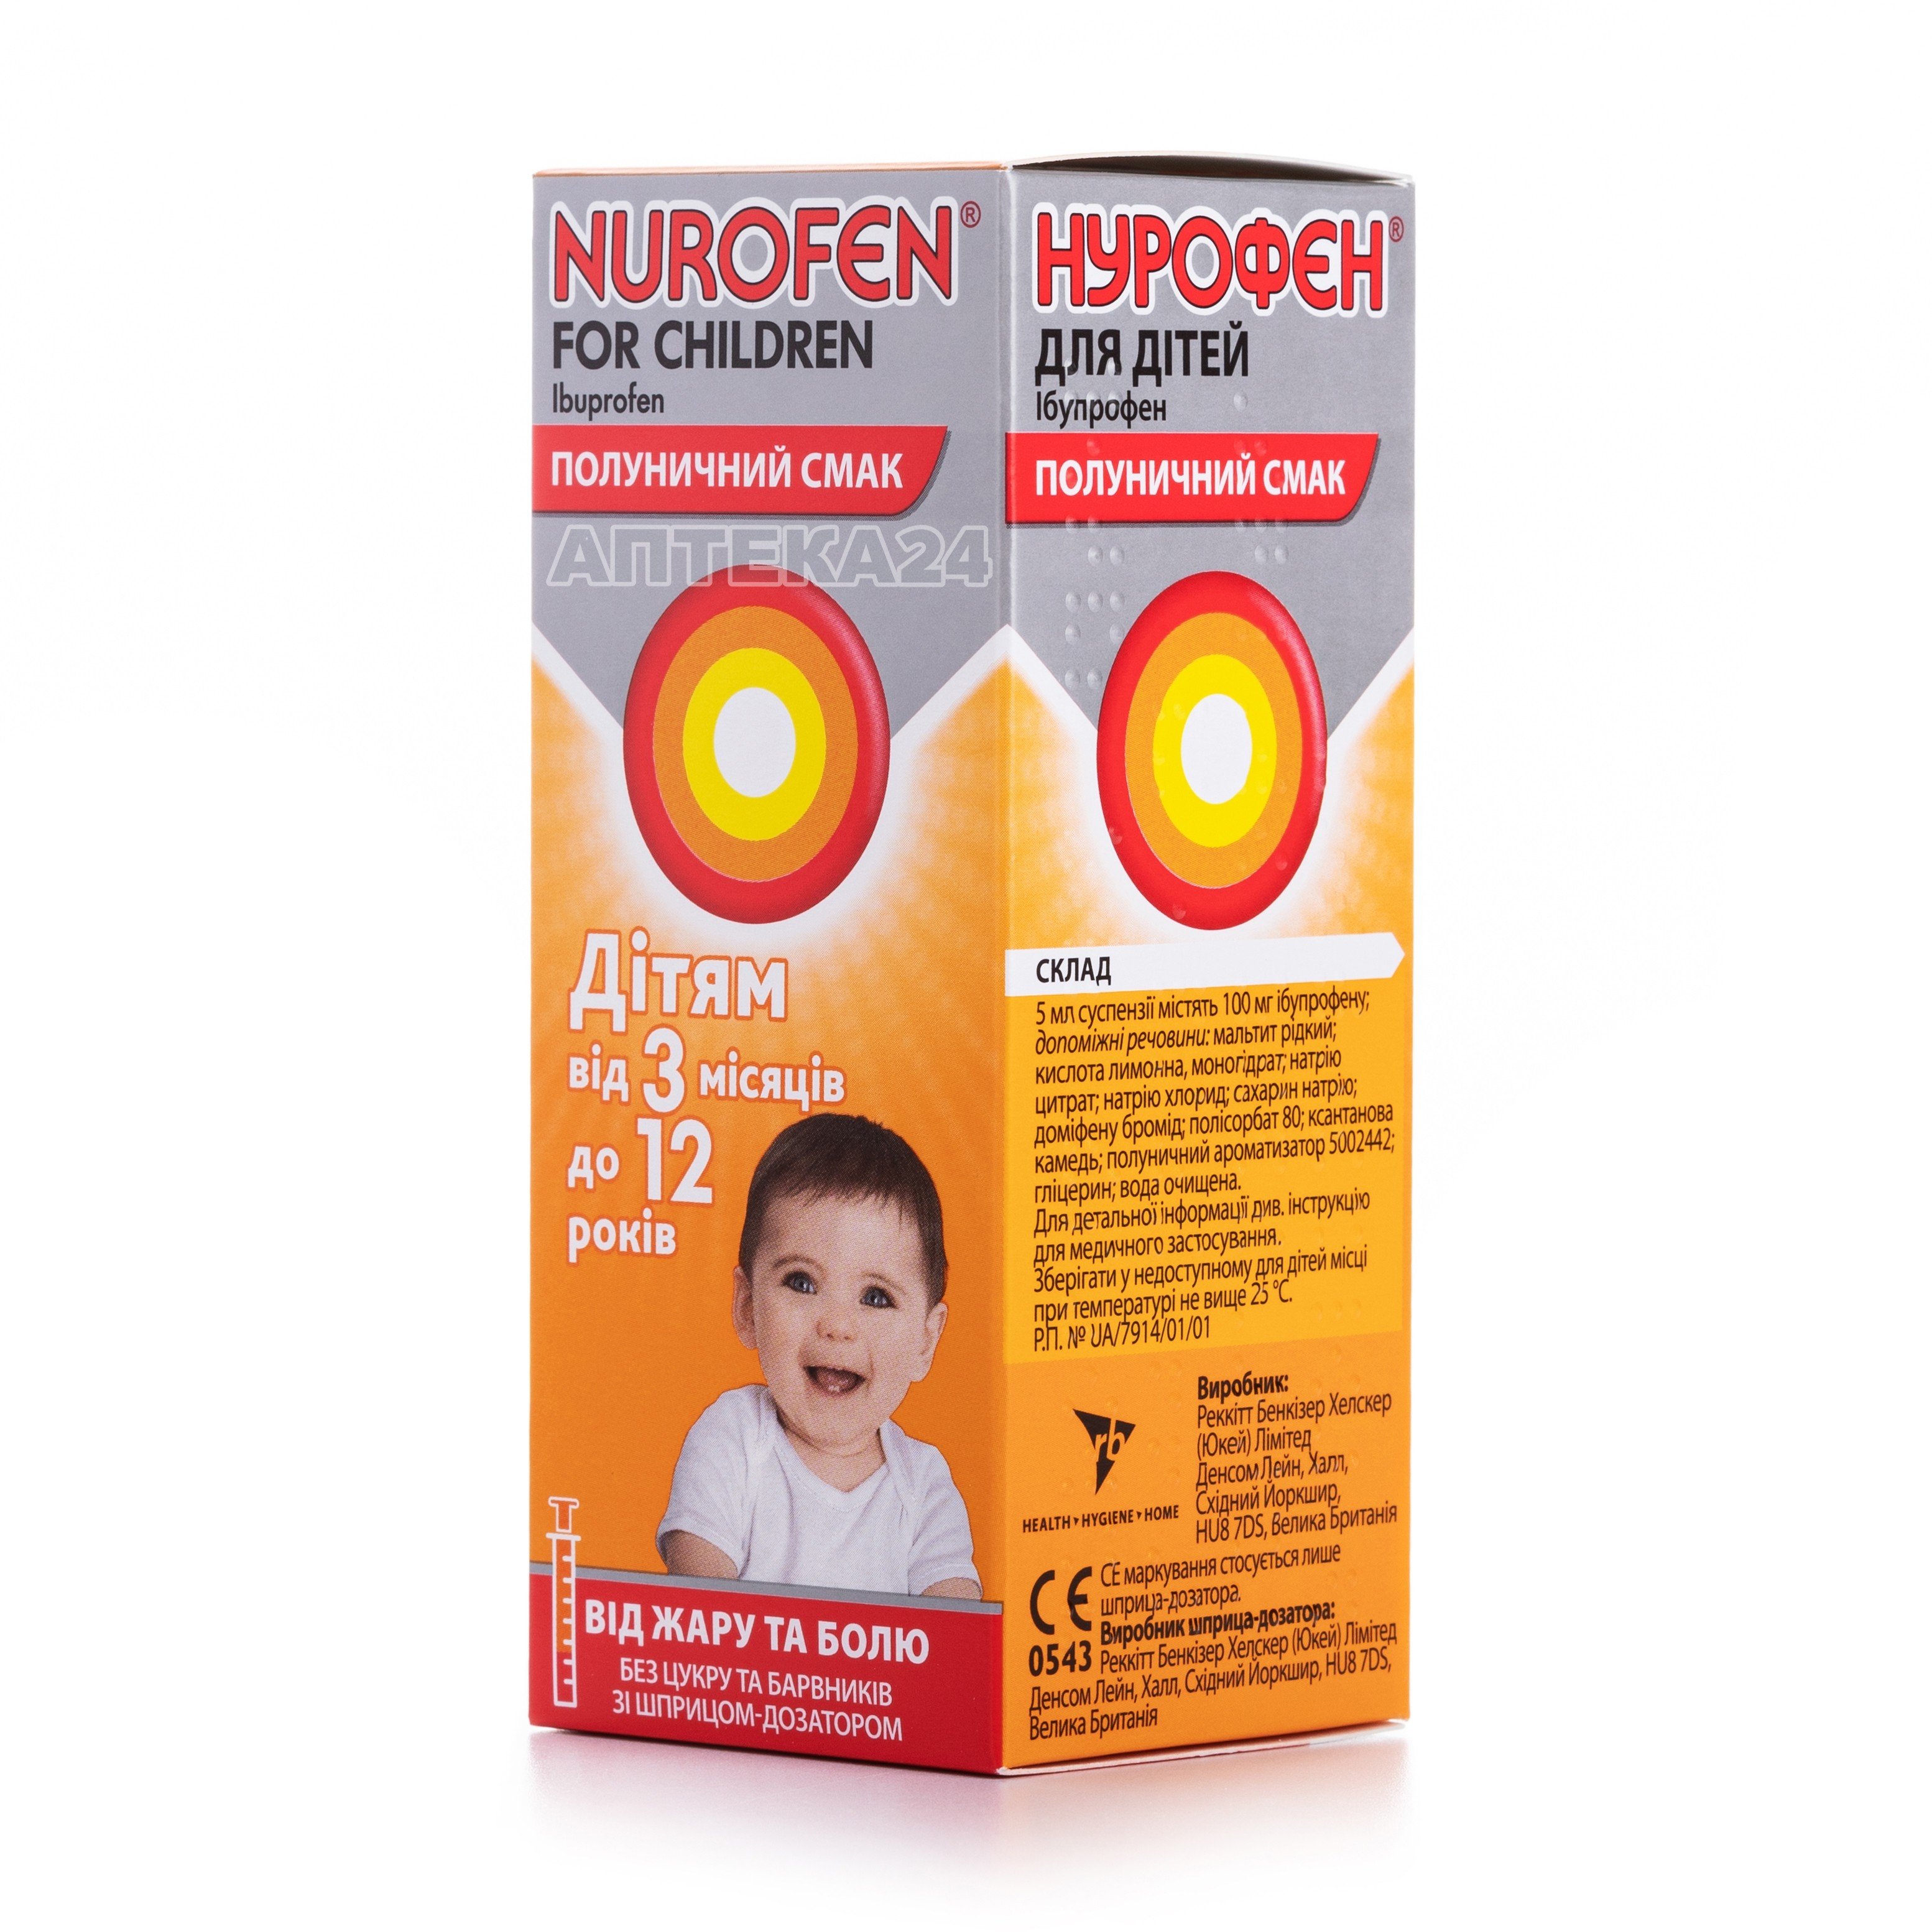 Нурофен для дітей суспензія з полуничним смаком 100 мл: інструкція .